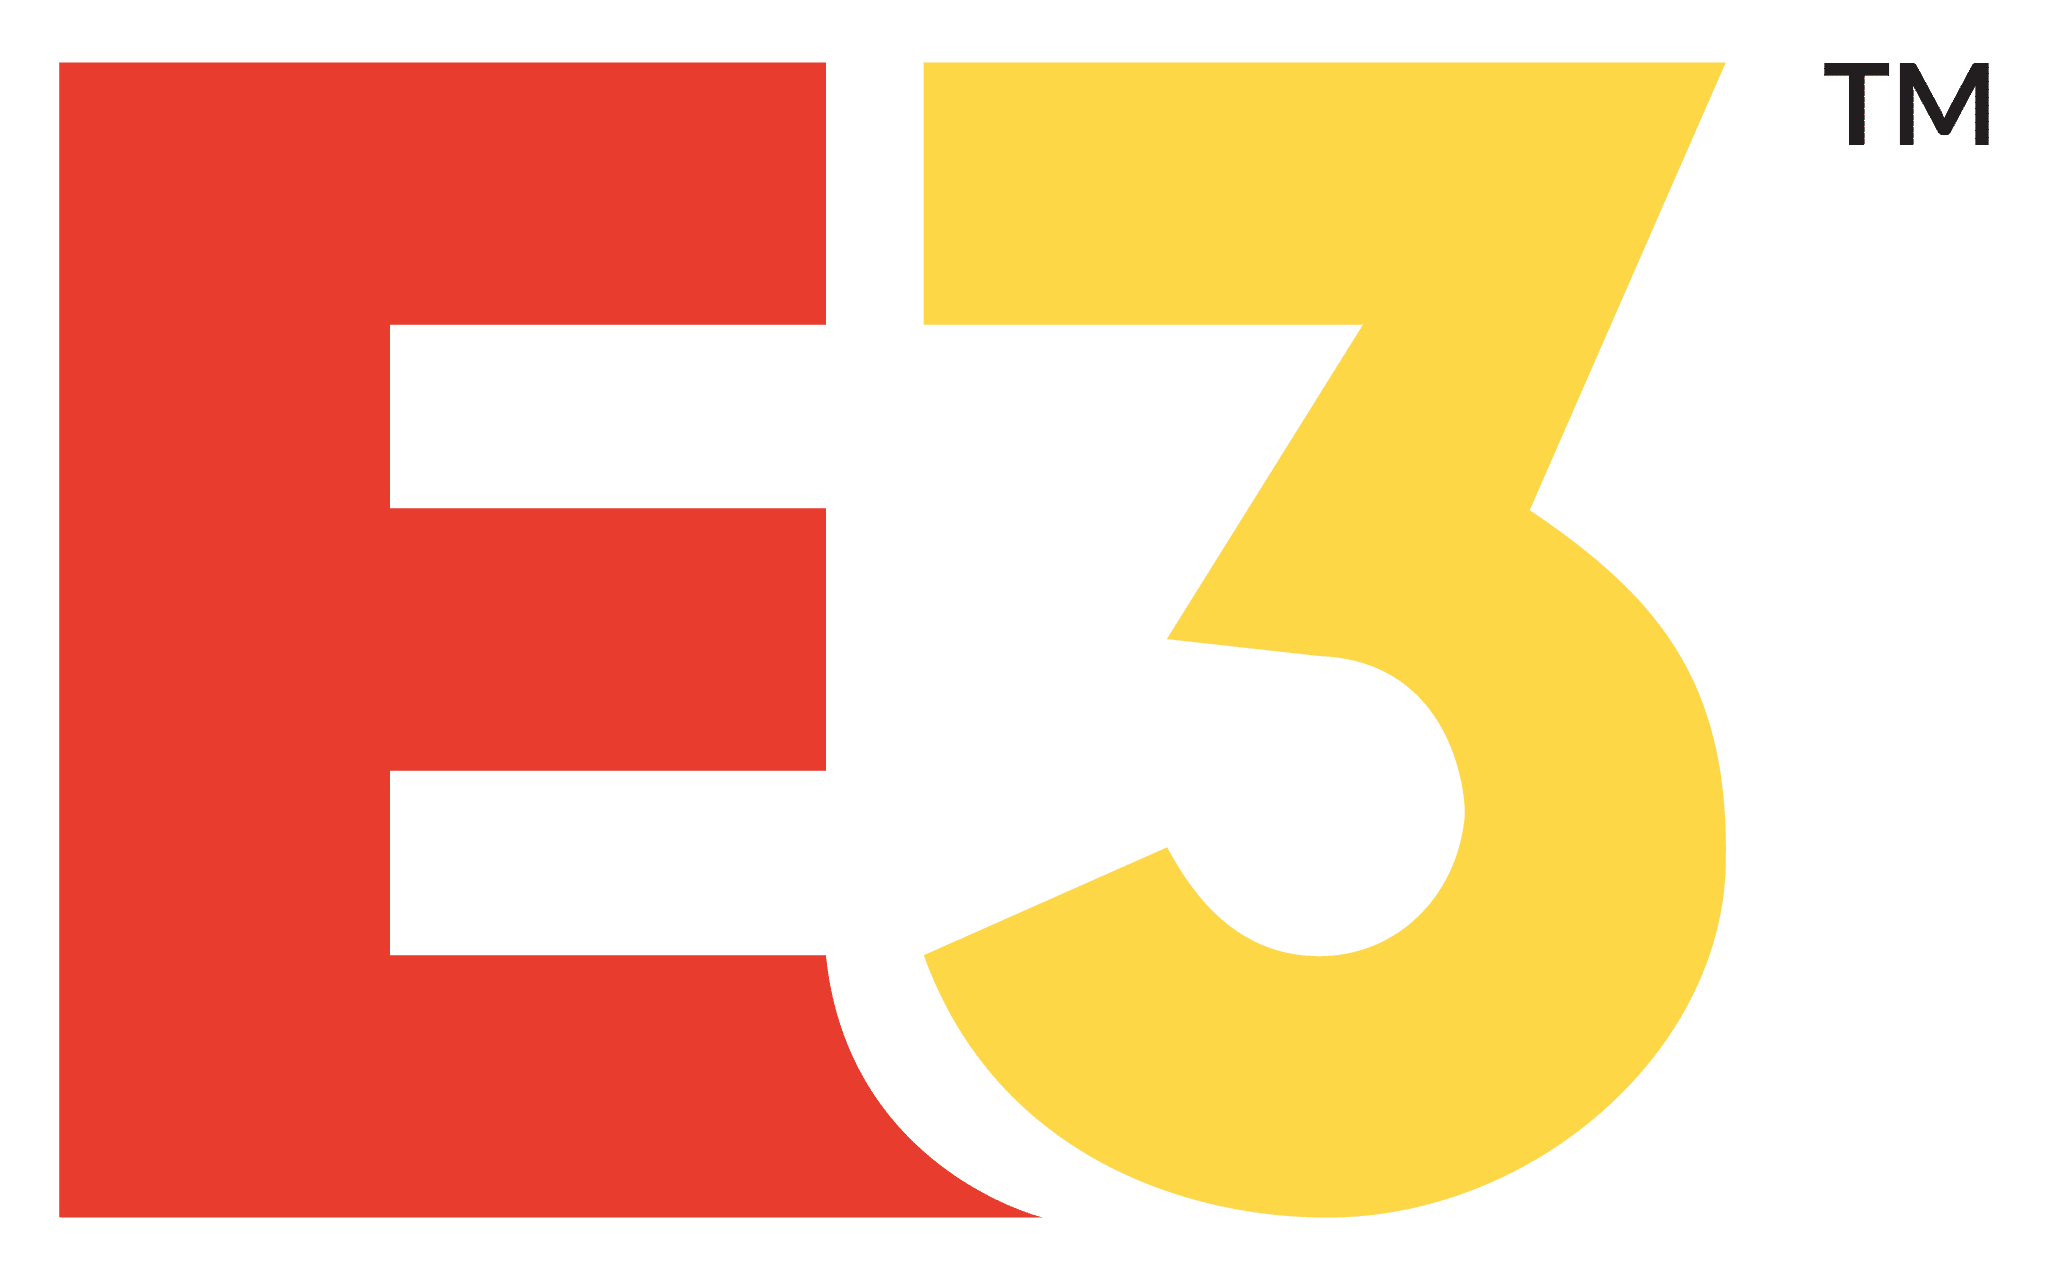 Los boletos del E3 2018 a la venta el 12 de Febrero